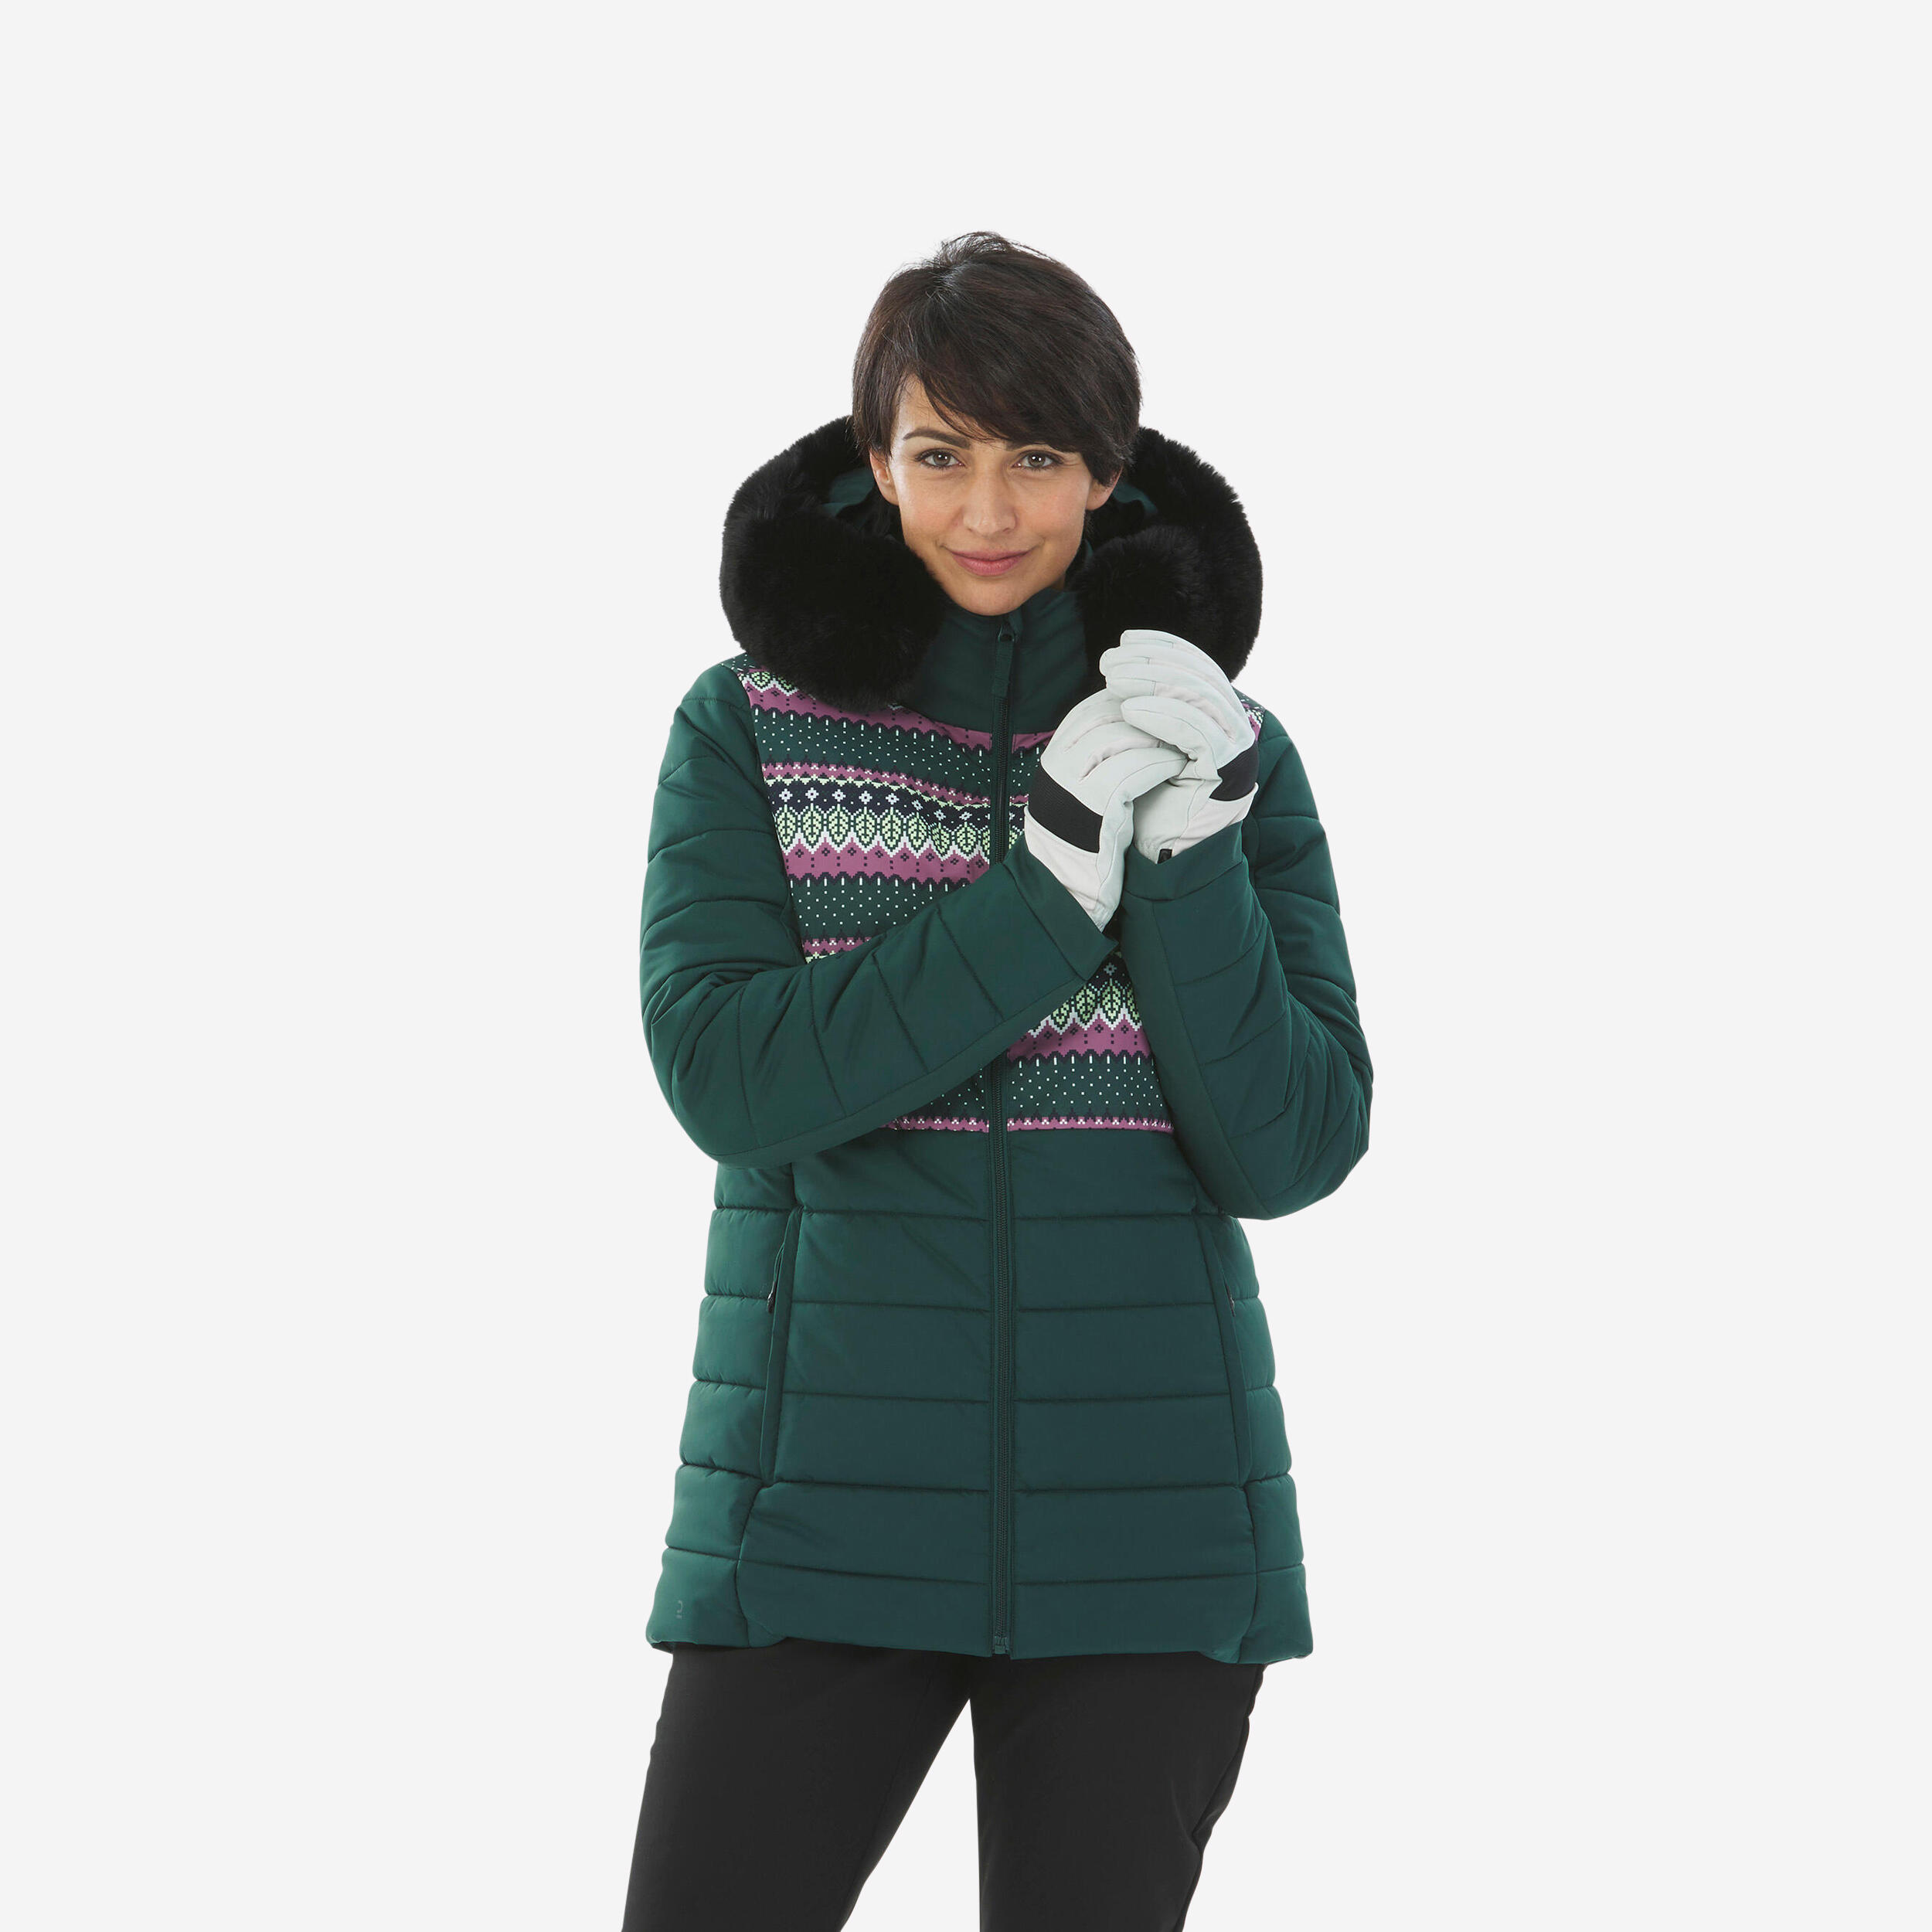 Women's Mid-Length Warm Ski Jacket - 100 Patterned WEDZE